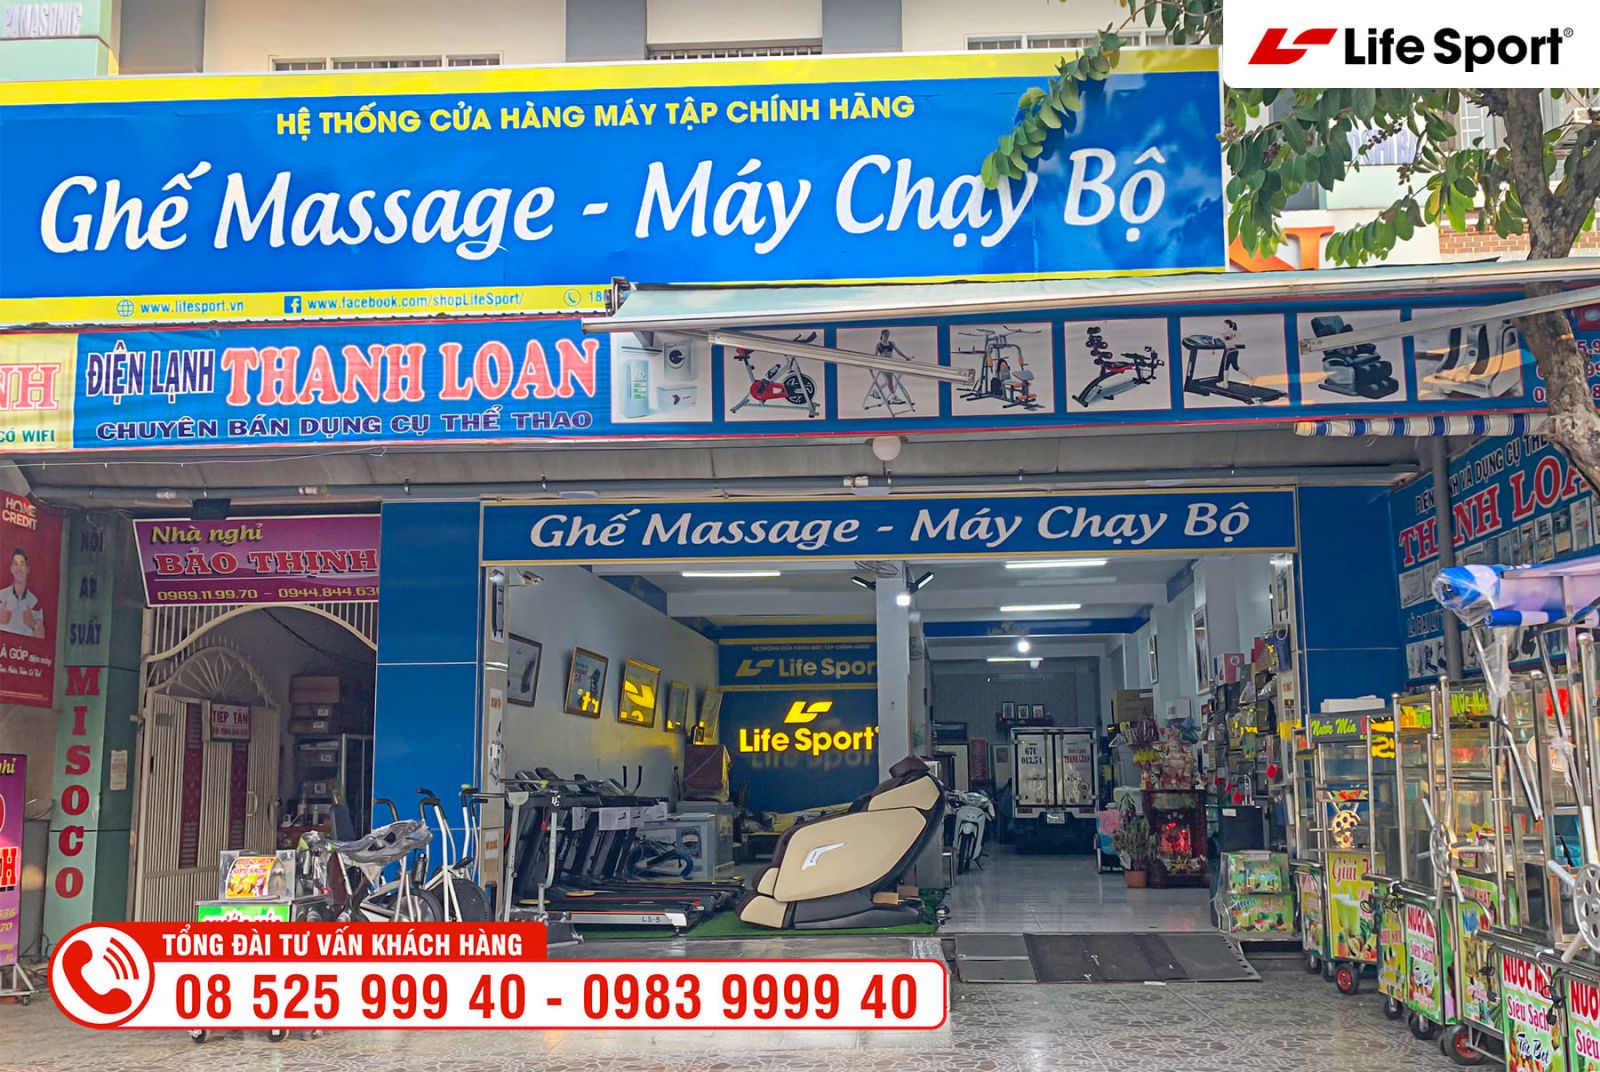 Chi nhánh mua ghế massage tại Châu Đốc - An Giang